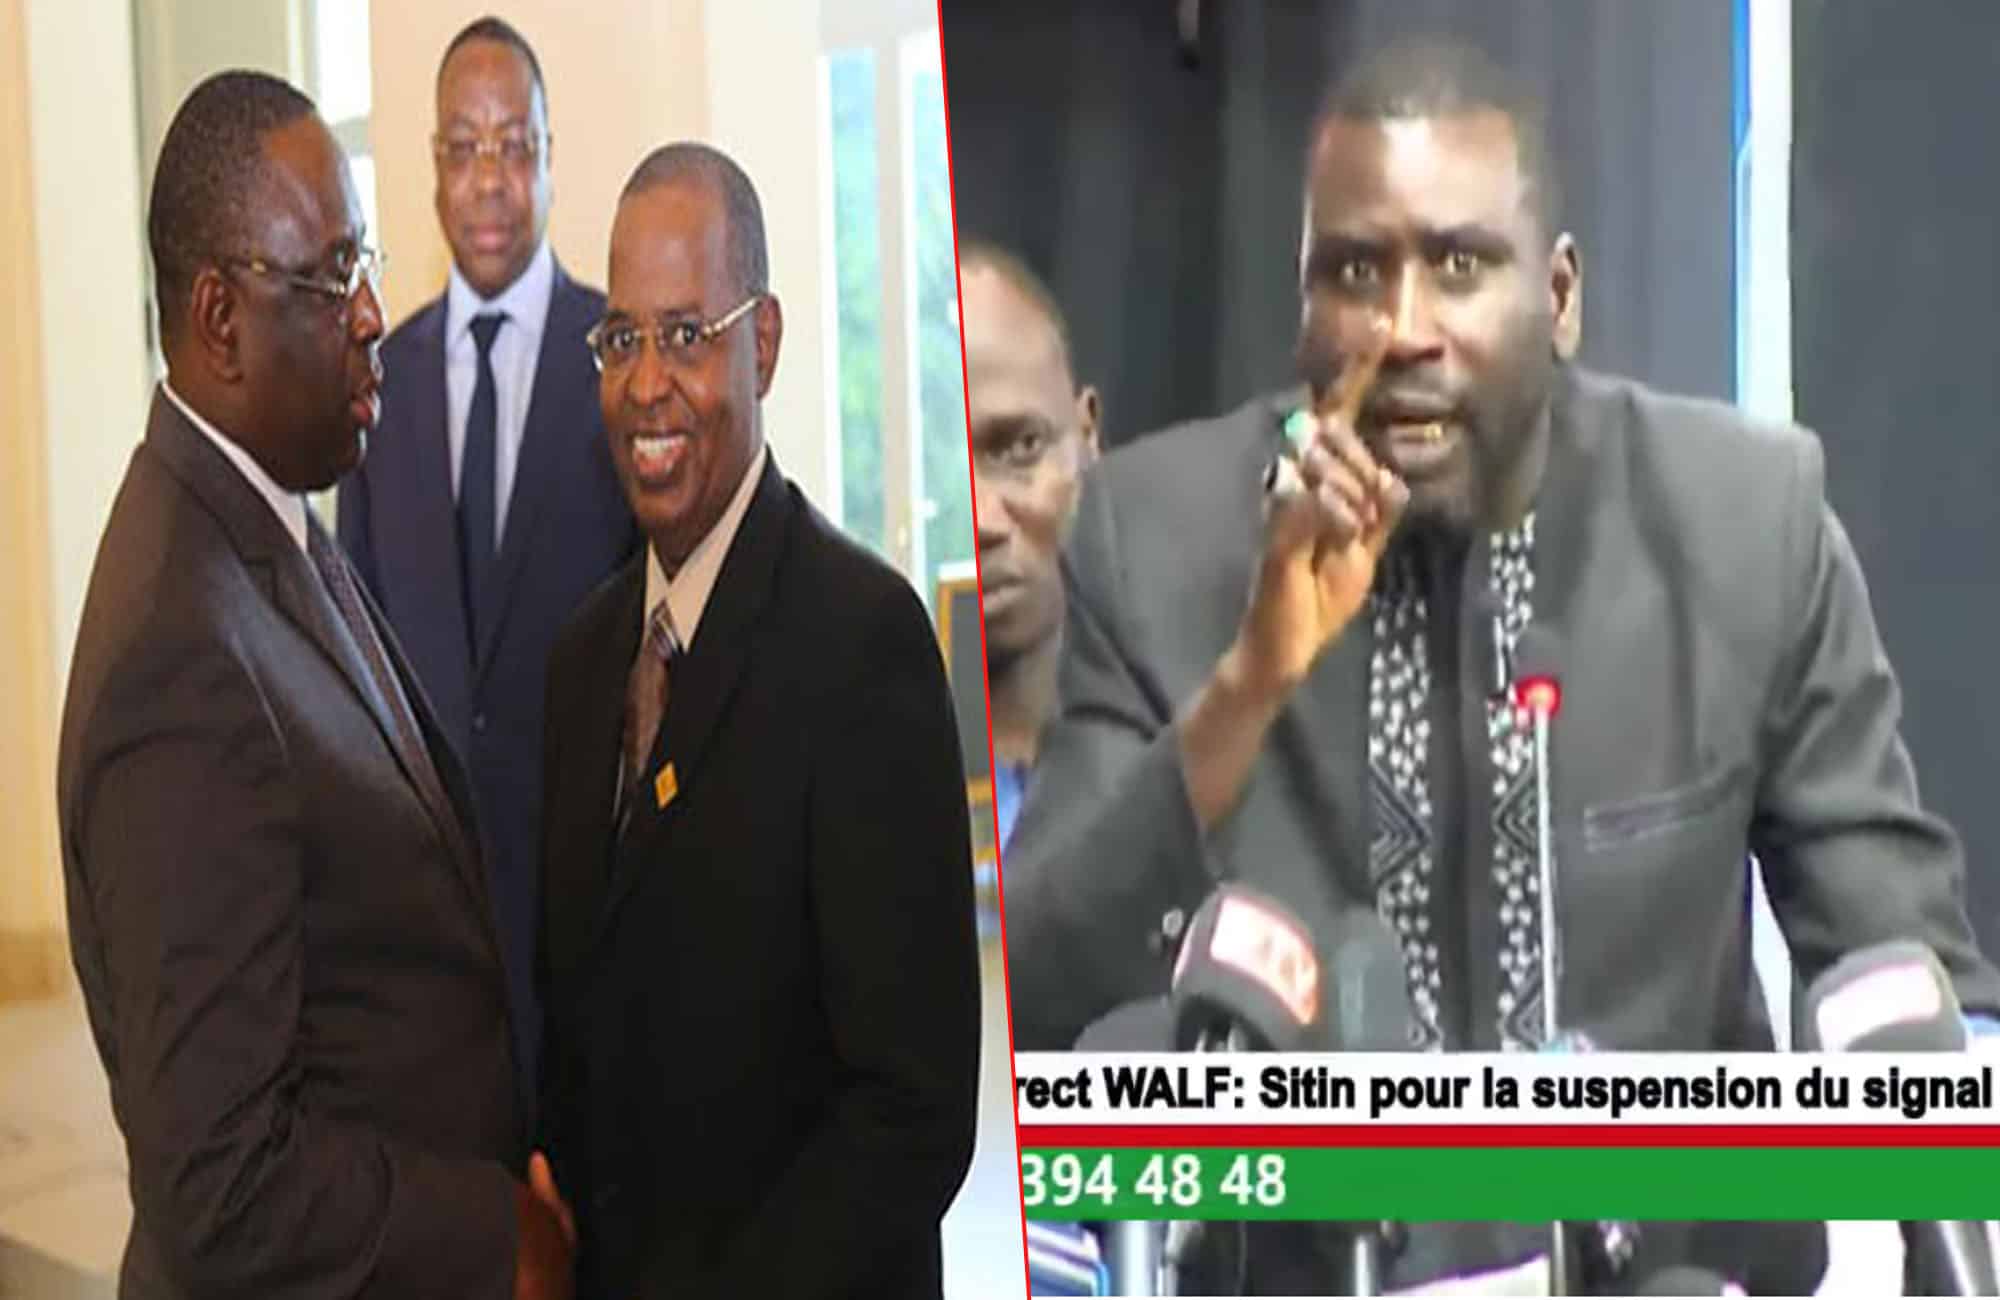 Signal Walf suspendu pour 30 jours: Mamadou Biteye envoie un message fort à Macky Sall "Boul Faté..." (Vidéo)